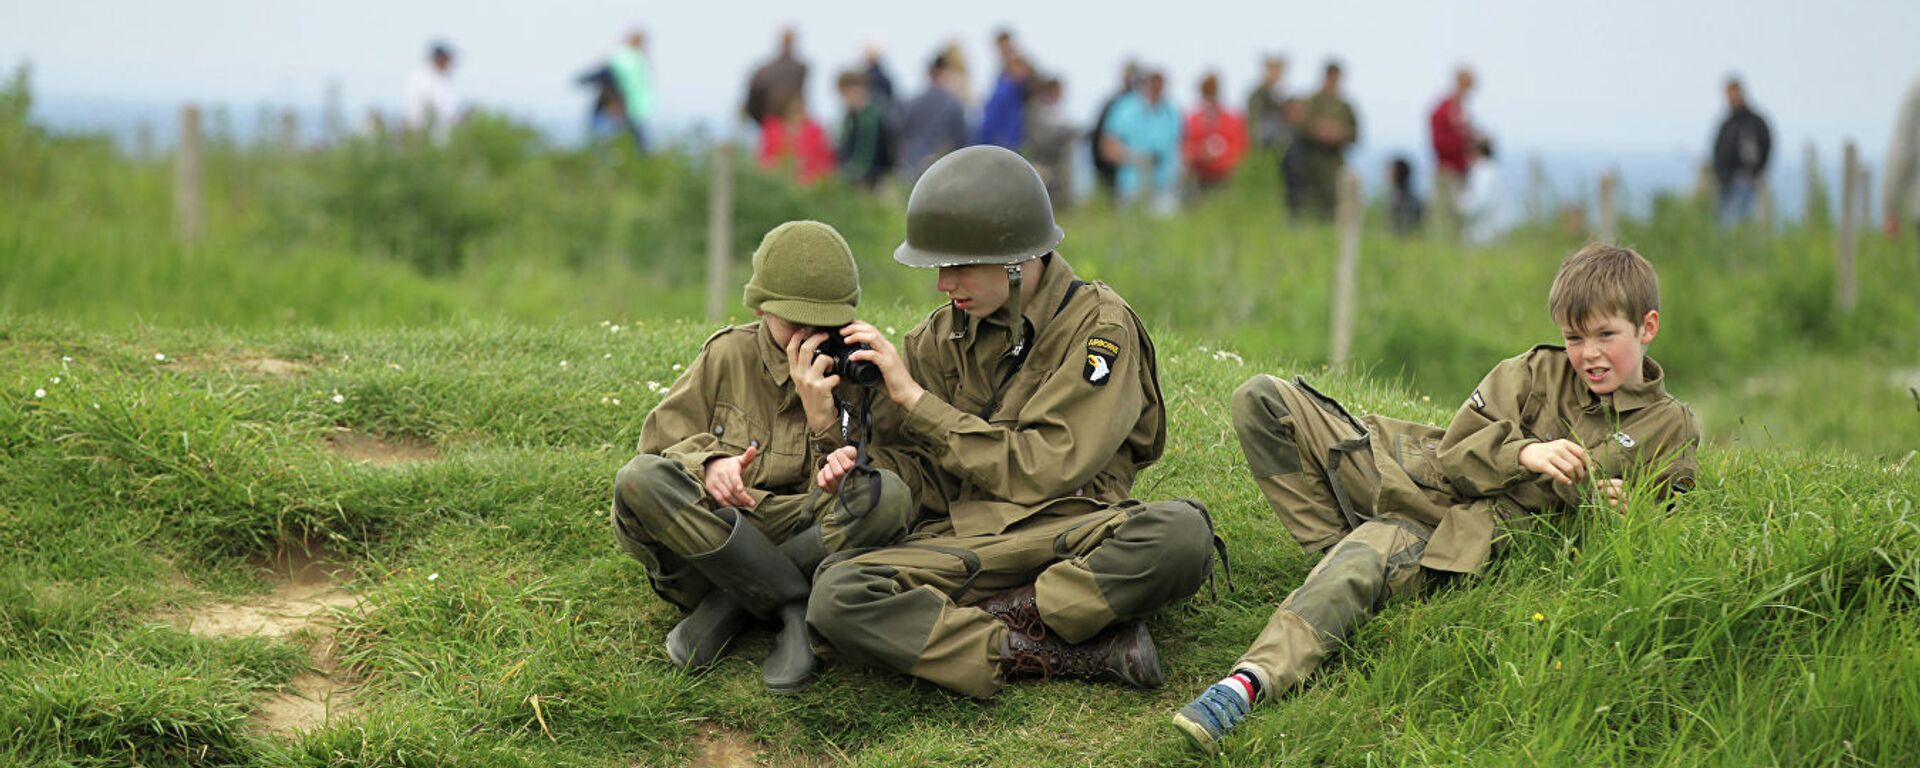 Дети в солдатской форме в Криквиль-ан-Бессен в Нормандии  - Sputnik Абхазия, 1920, 08.05.2019